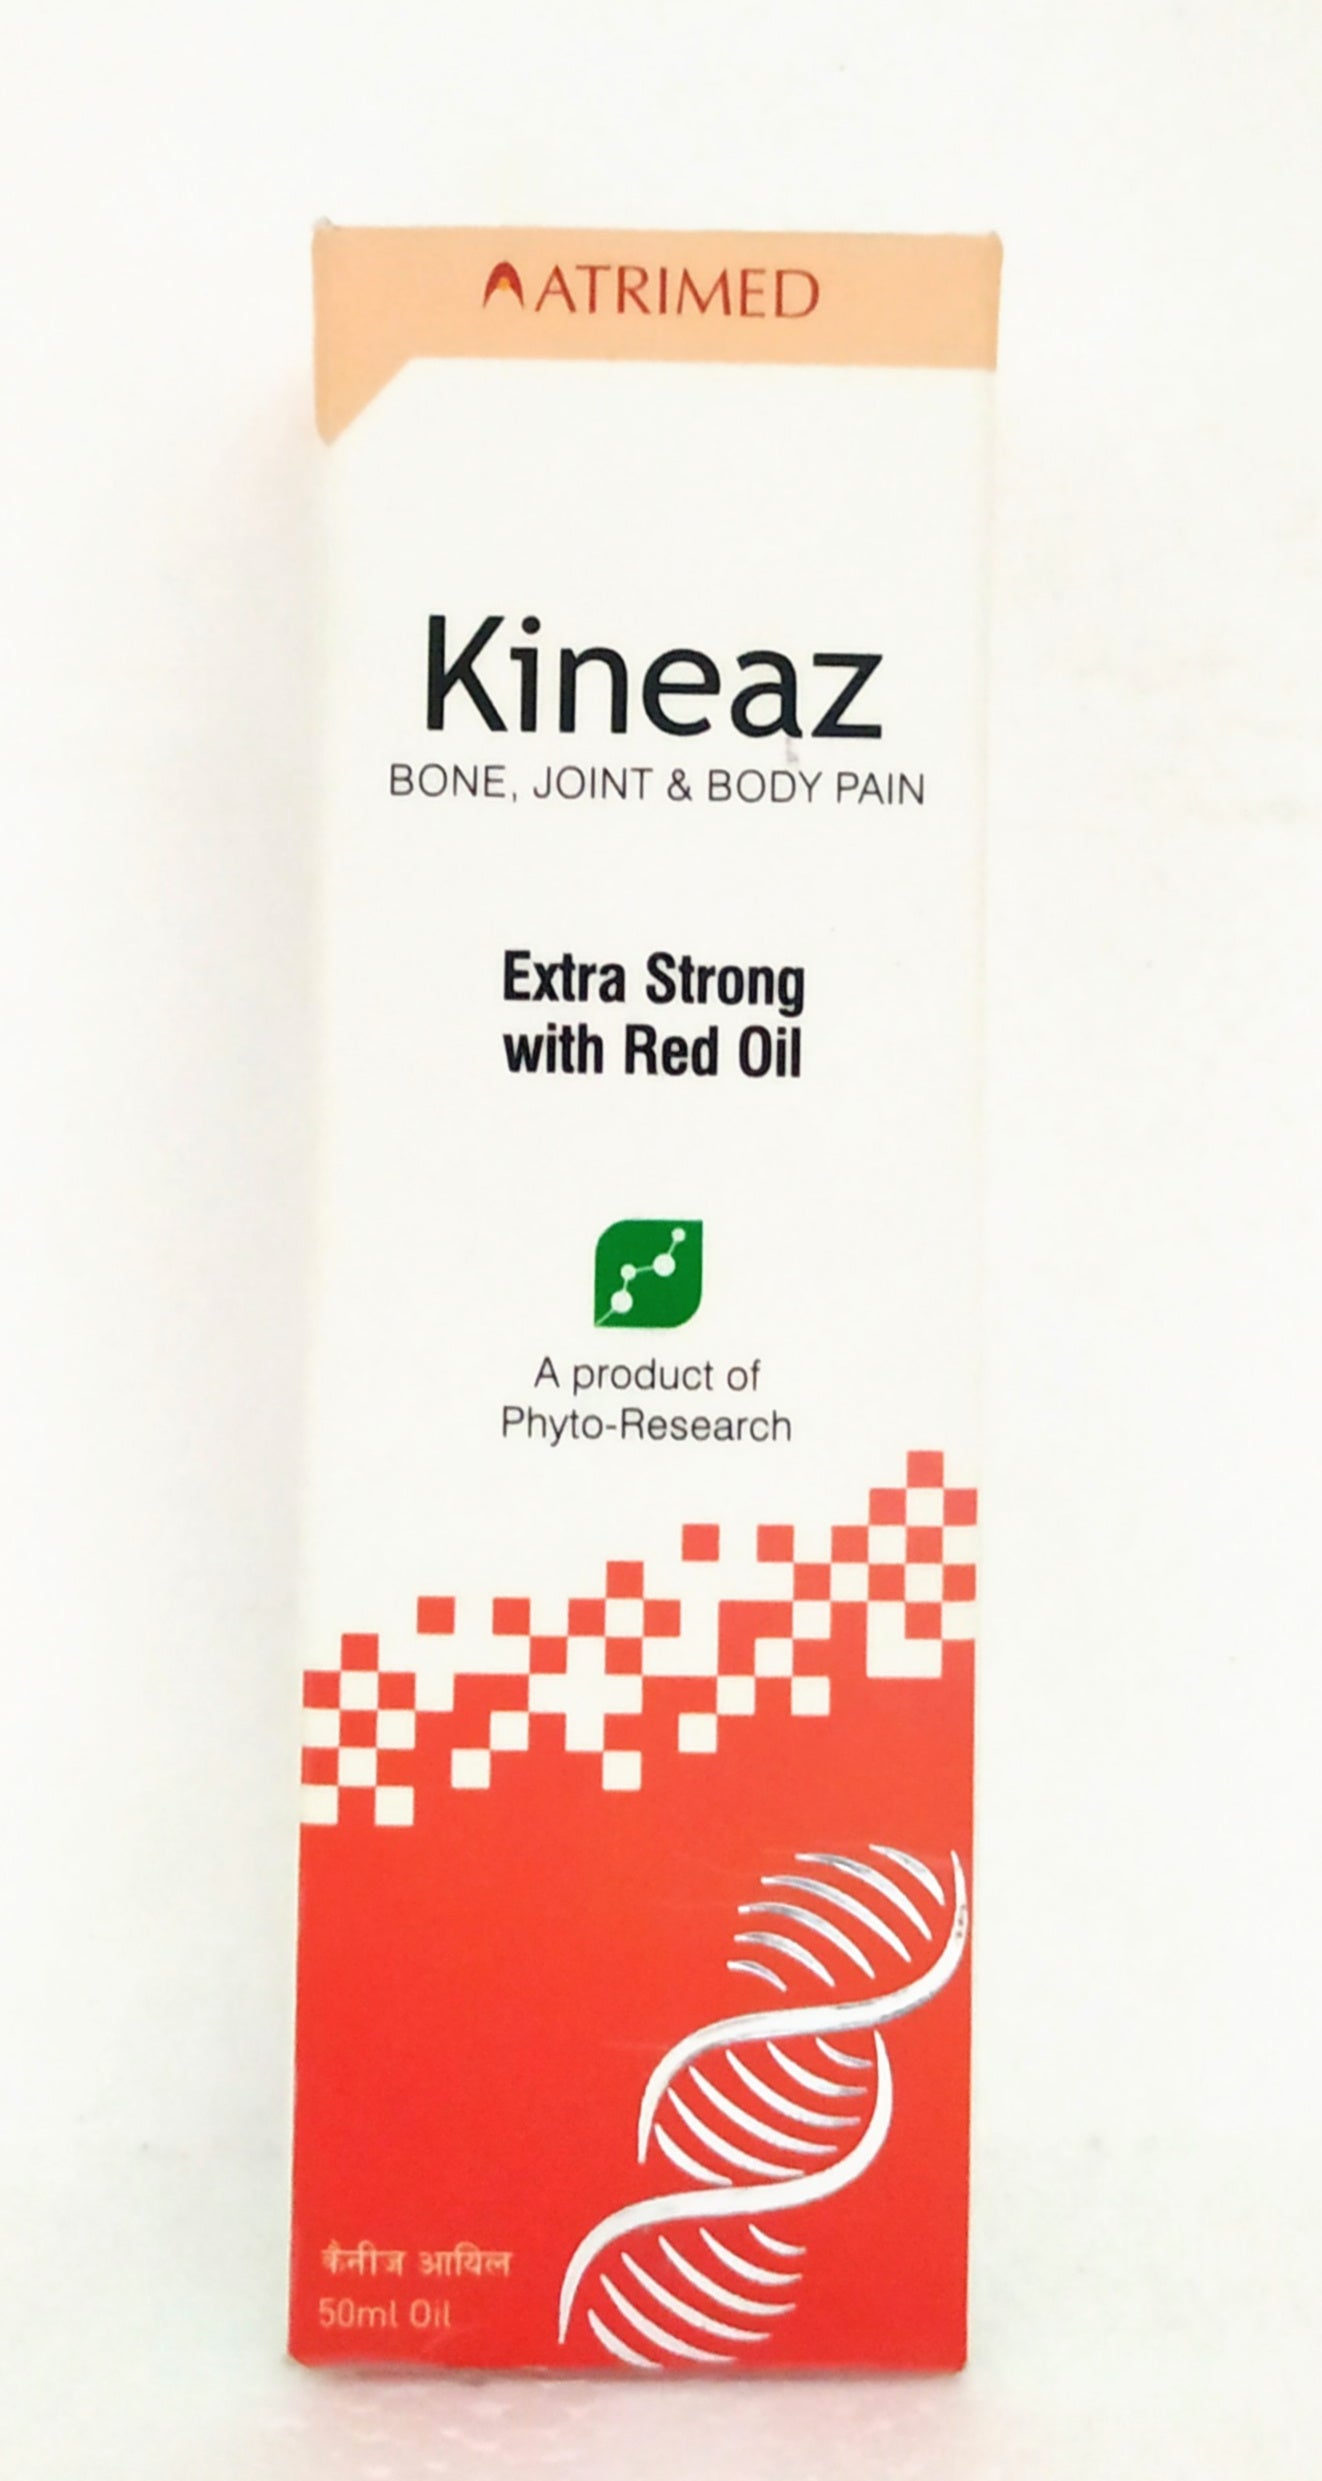 Kineaz oil 50ml -  Atrimed - Medizzo.com